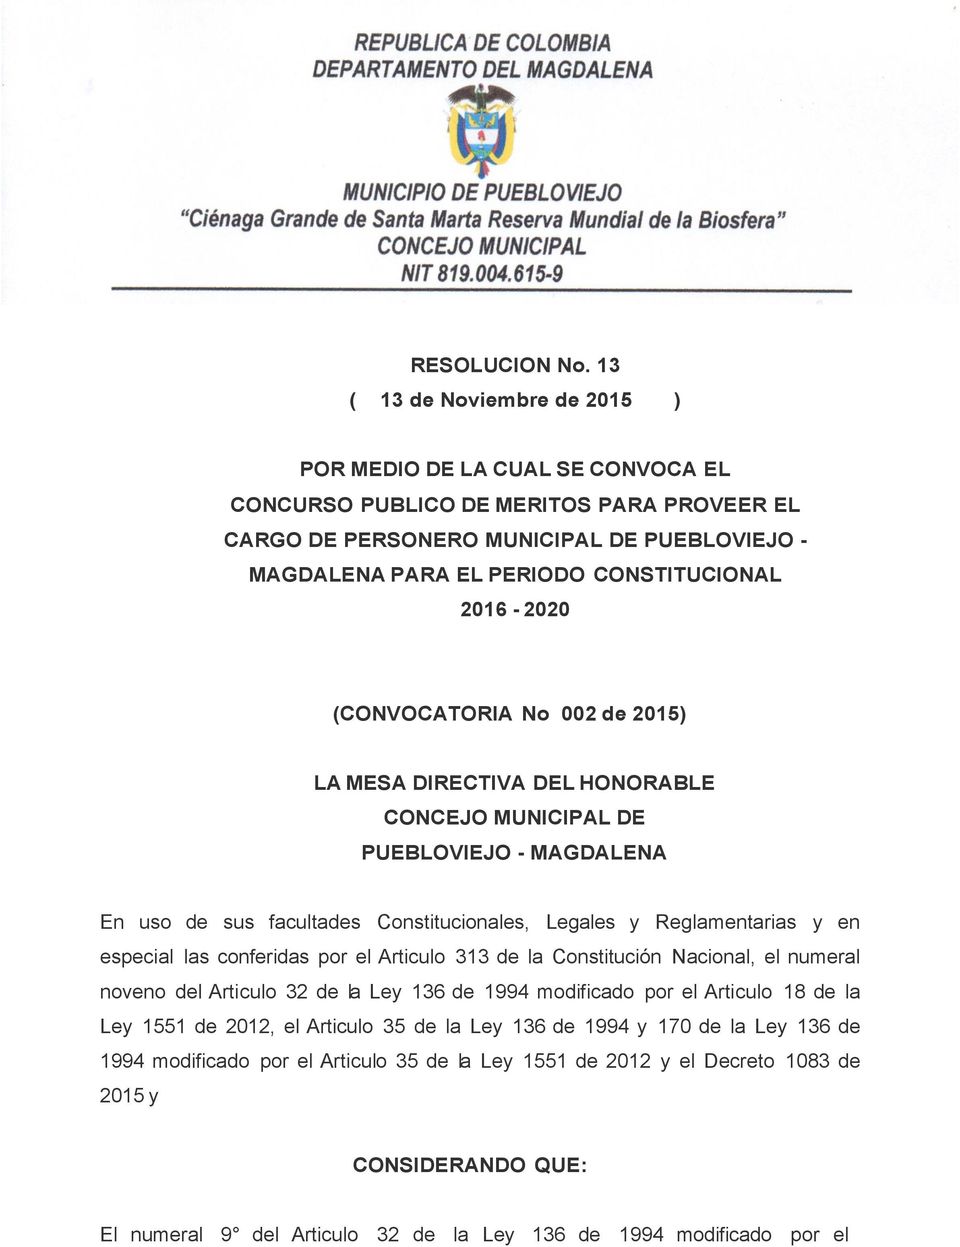 2016-2020 (CONVOCATORIA No 002 de 2015) LA MESA DIRECTIVA DEL HONORABLE CONCEJO MUNICIPAL DE PUEBLOVIEJO - MAGDALENA En uso de sus facultades Constitucionales, Legales y Reglamentarias y en especial